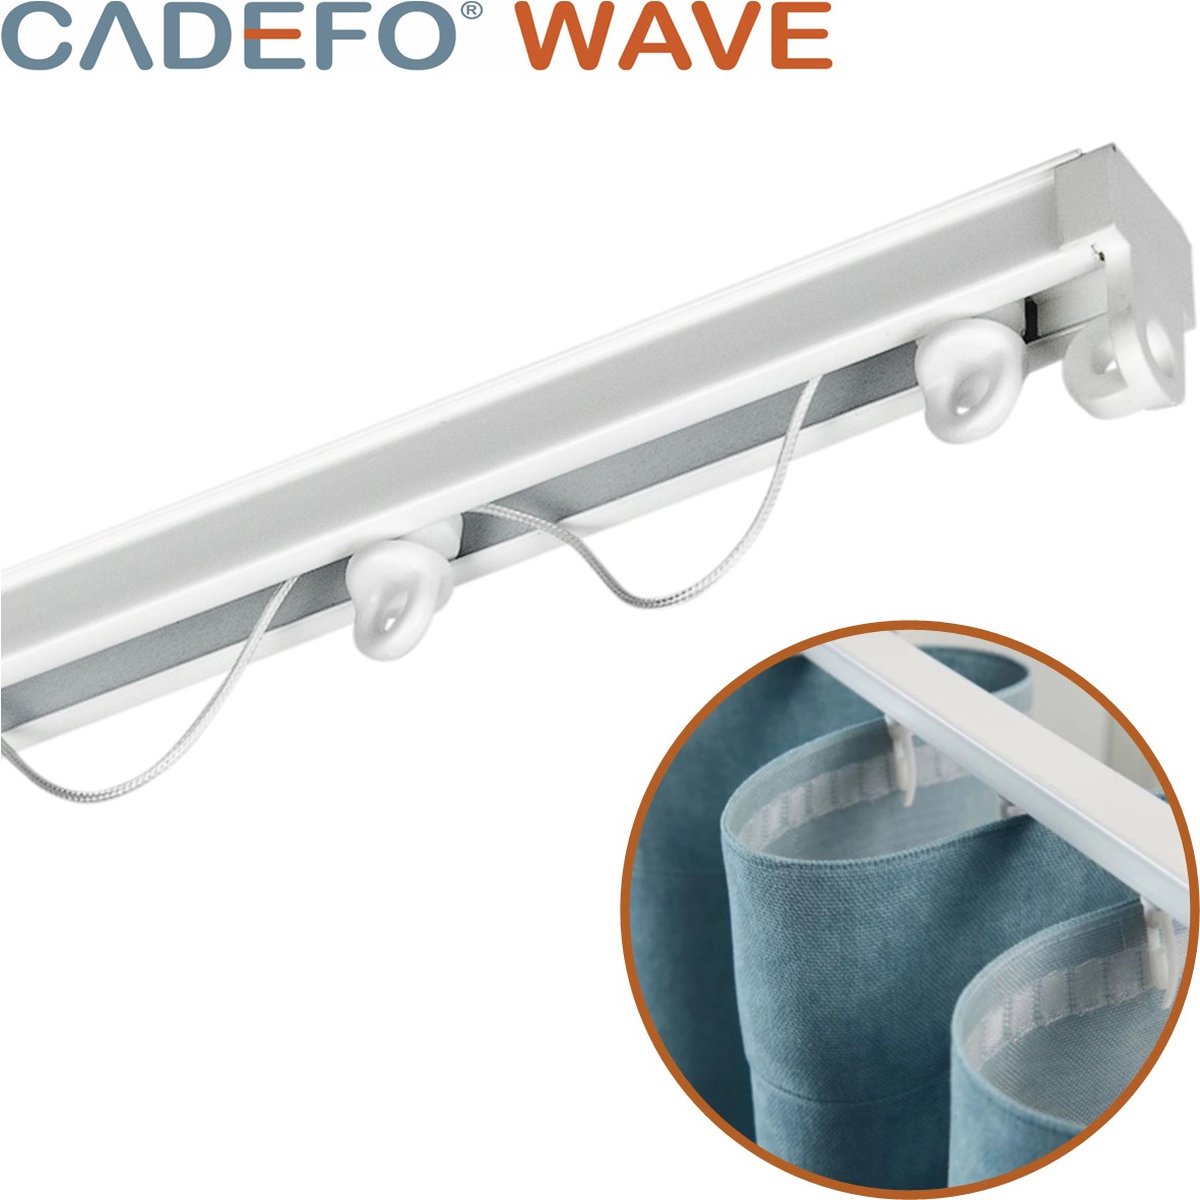 CADEFO WAVE (301 - 350 cm) Gordijnrails - Compleet op maat! - UIT 1 STUK - Leverbaar tot 6 meter - Plafondbevestiging - Lengte 340 cm